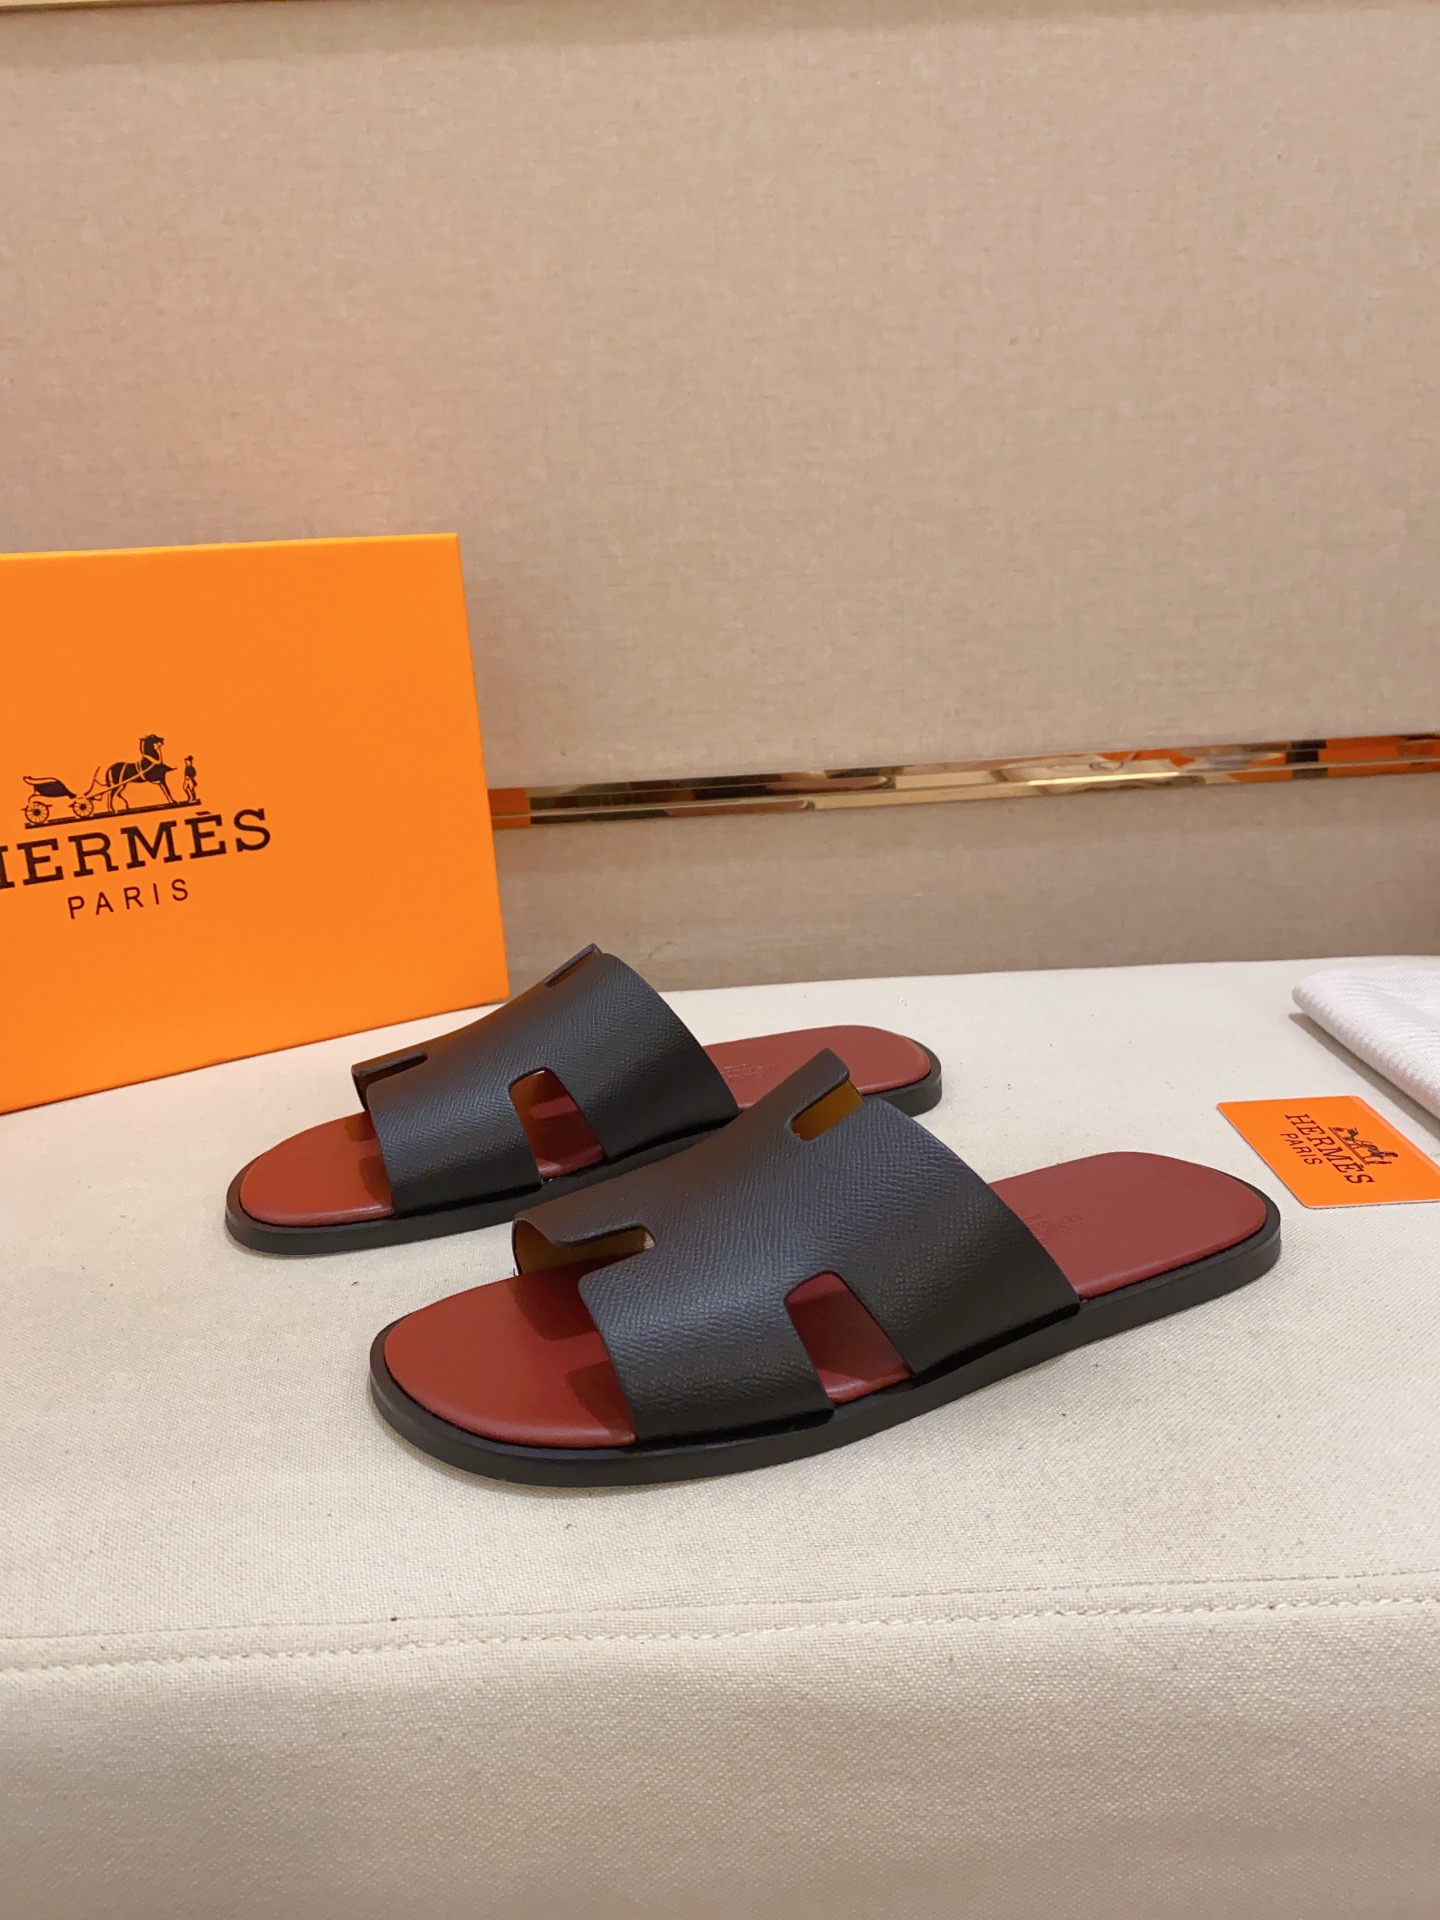 Hermes Slippers For Men # 269765, cheap Hermes Slippers For Men, only $59!